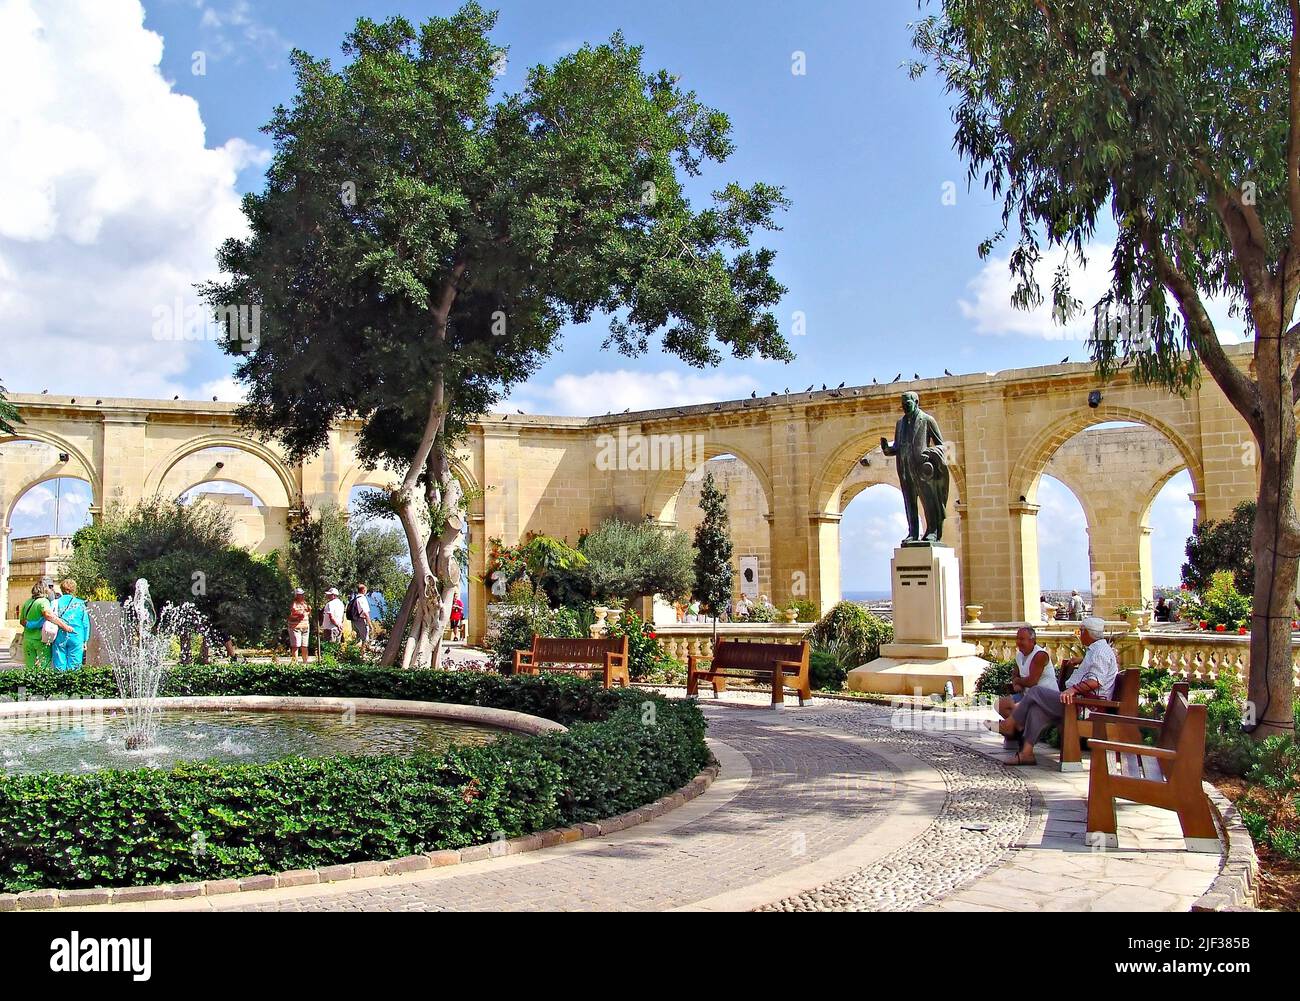 Upper Barracca Gardens in La Valetta, Malta Stock Photo